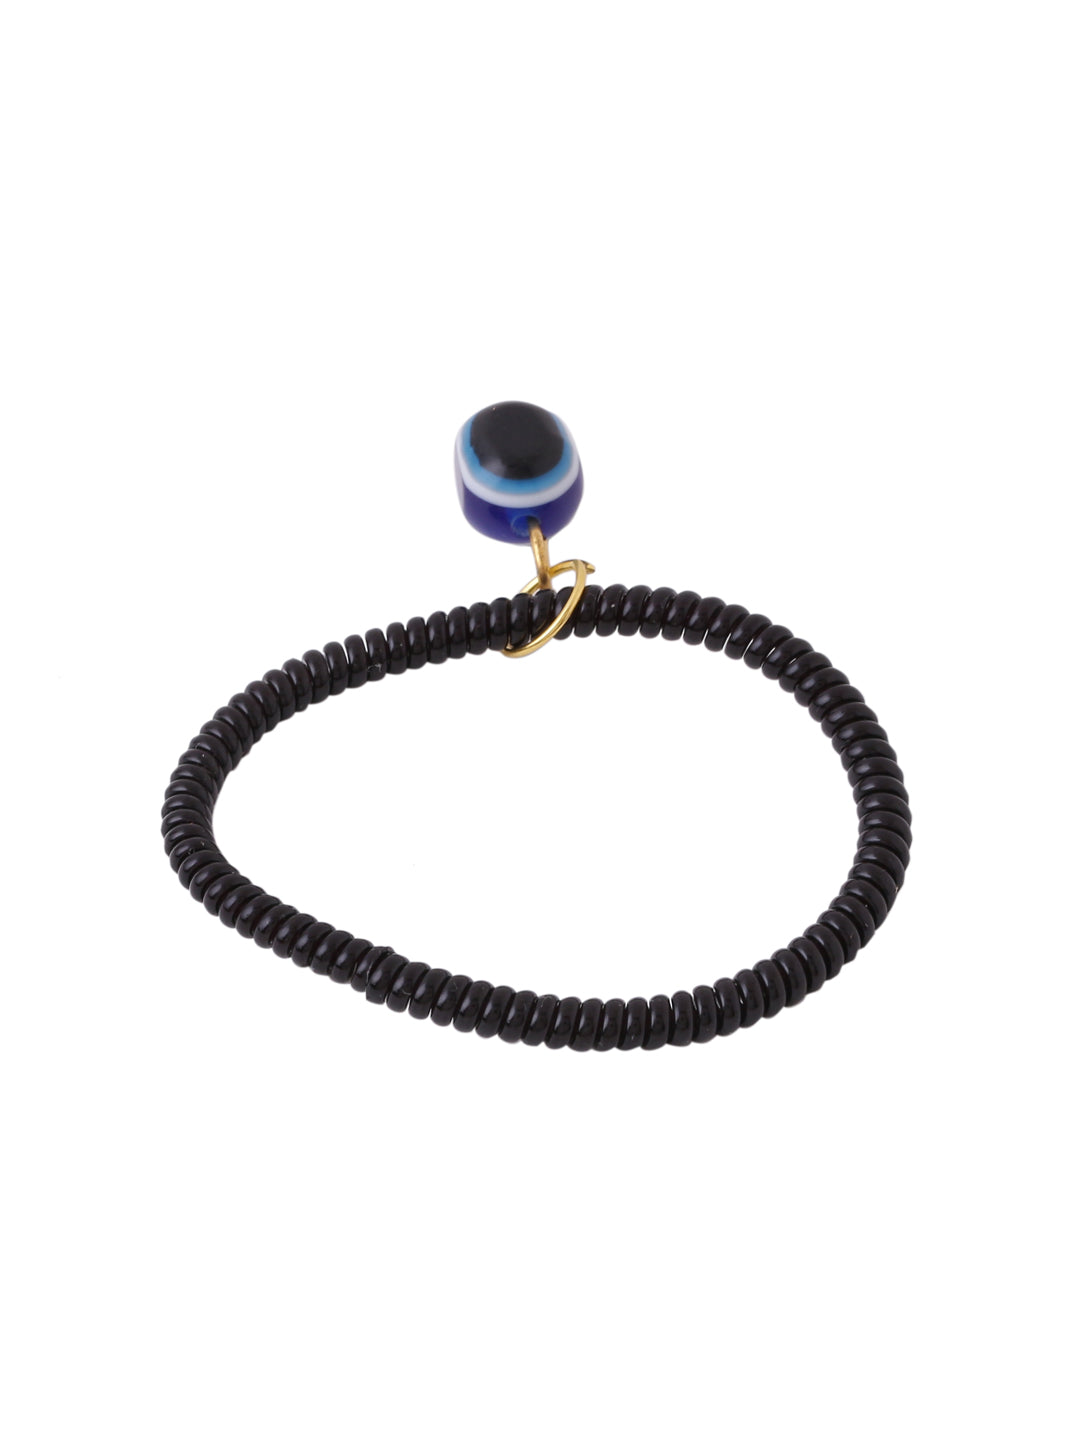 Women's black evil eye adjustable bracelet - NVR